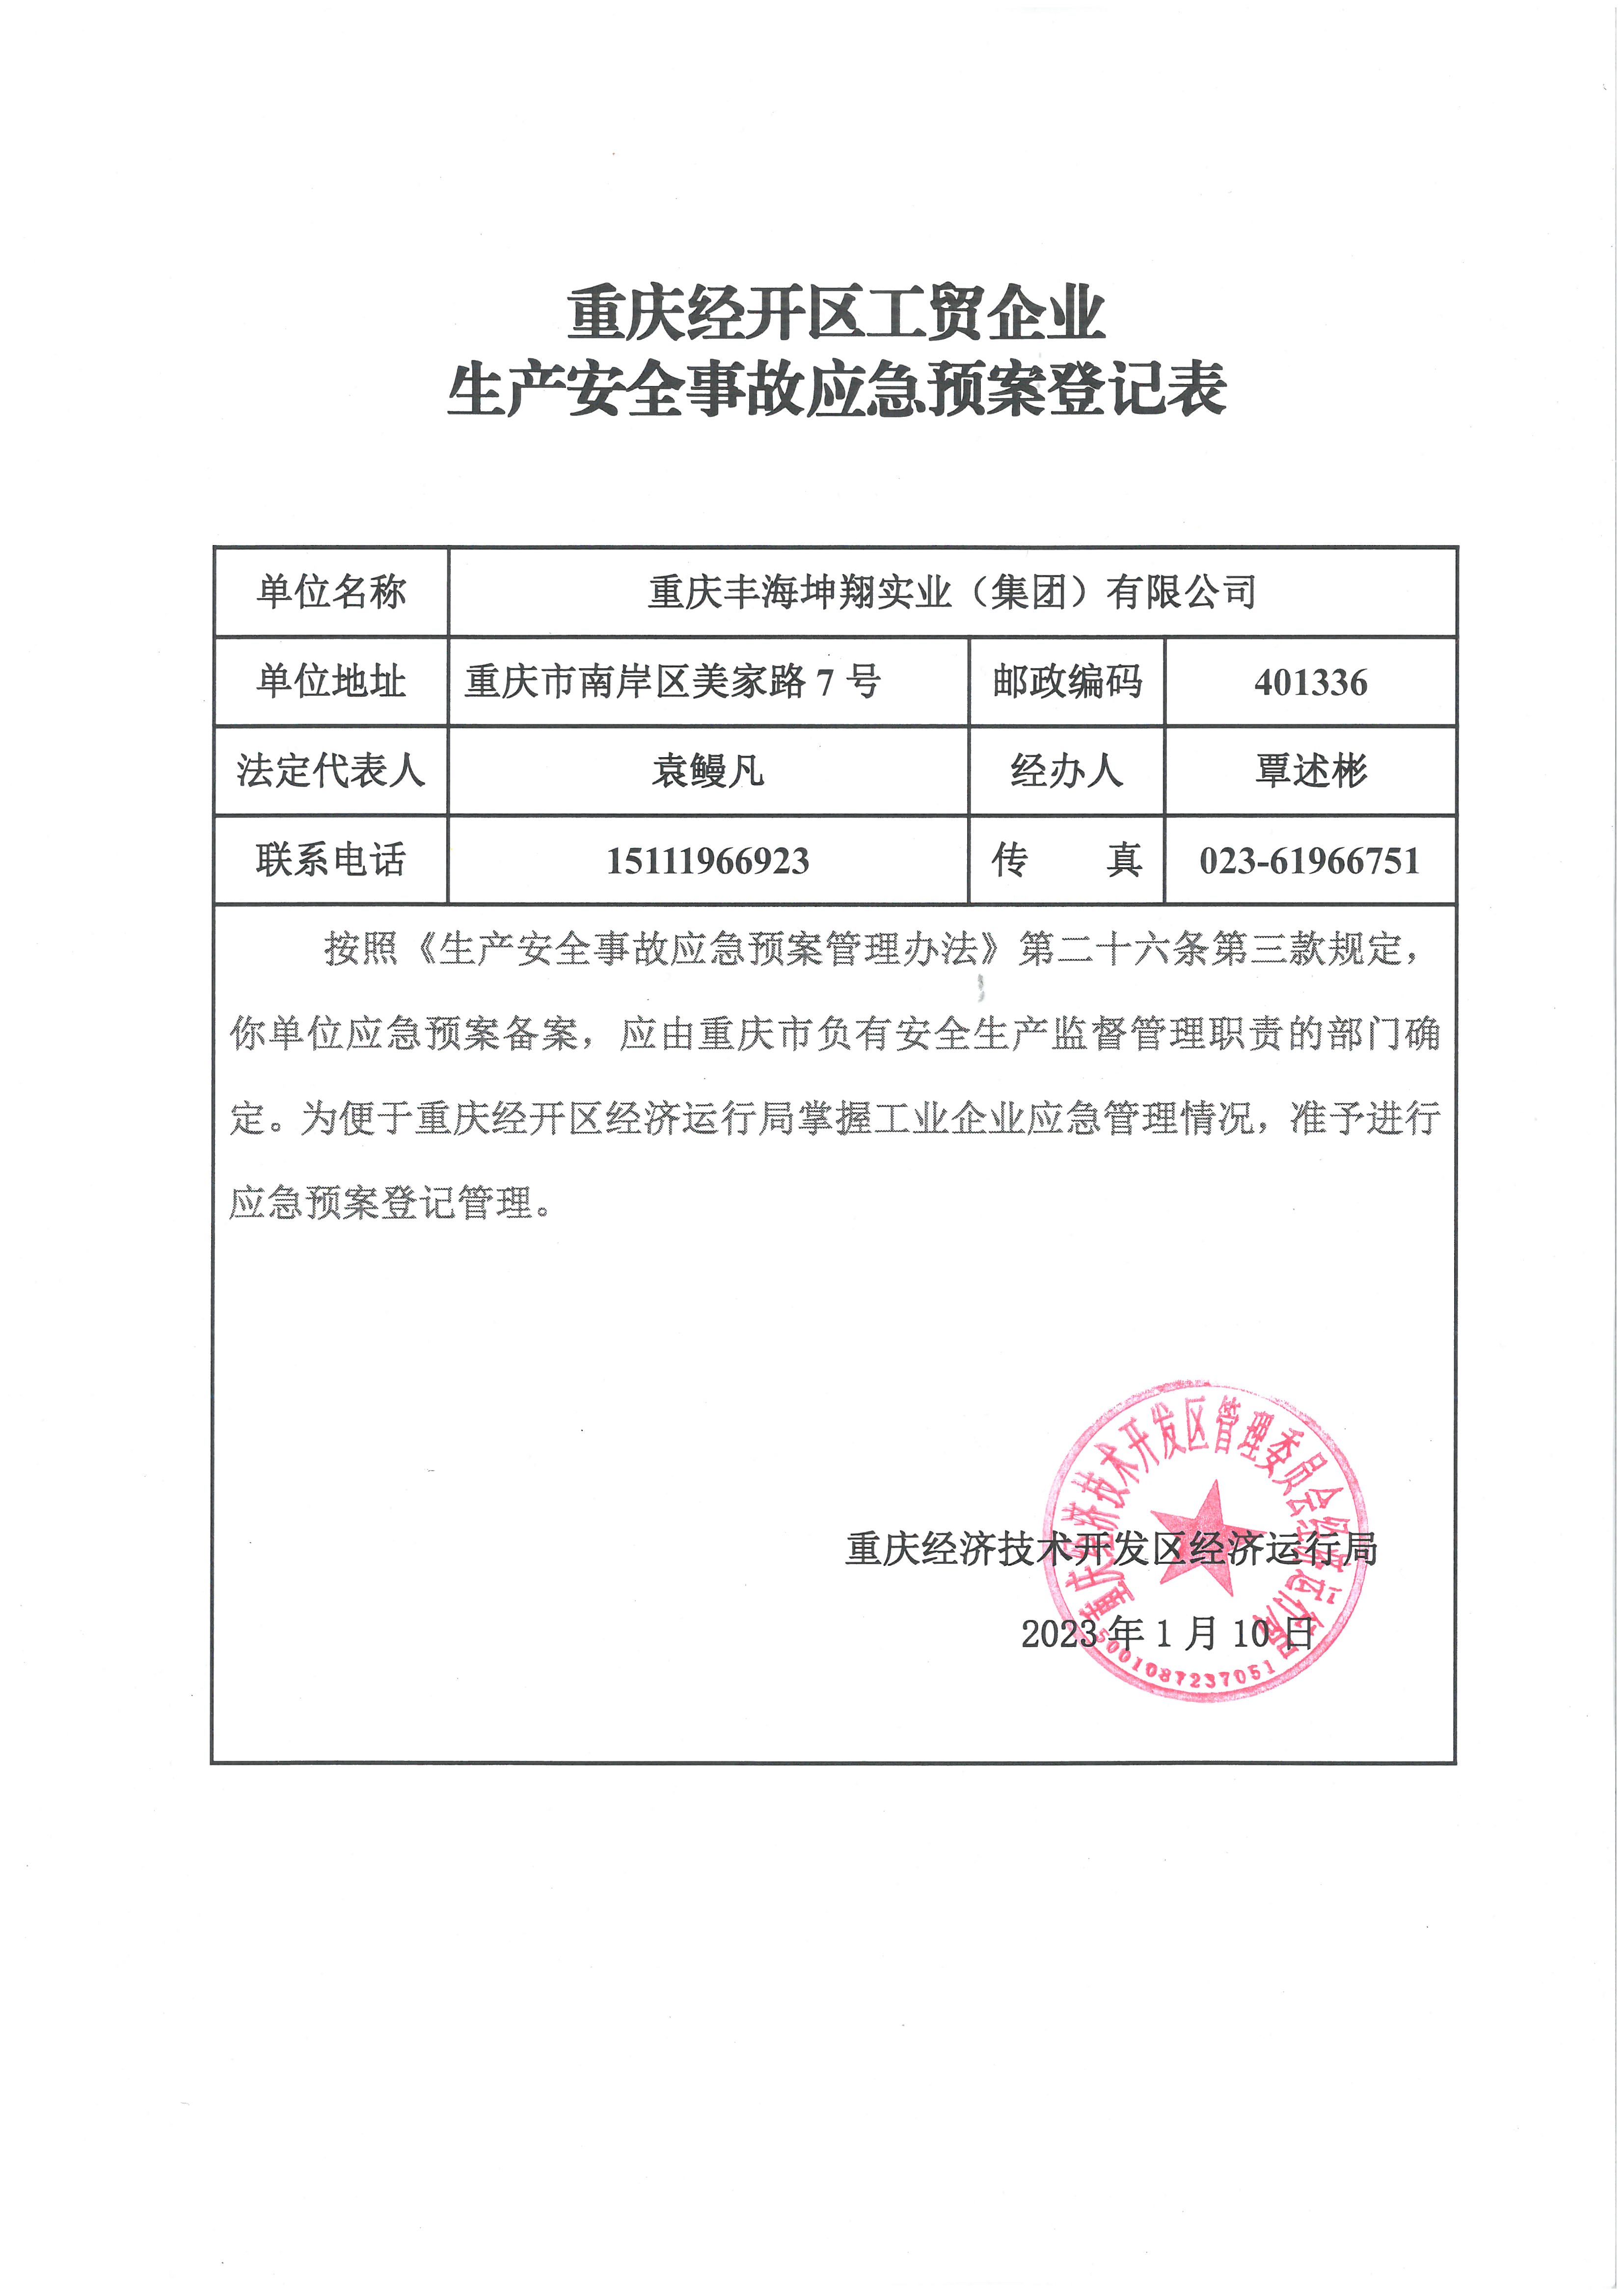 重慶經開區工貿企業生產安全事故應急預案登記表